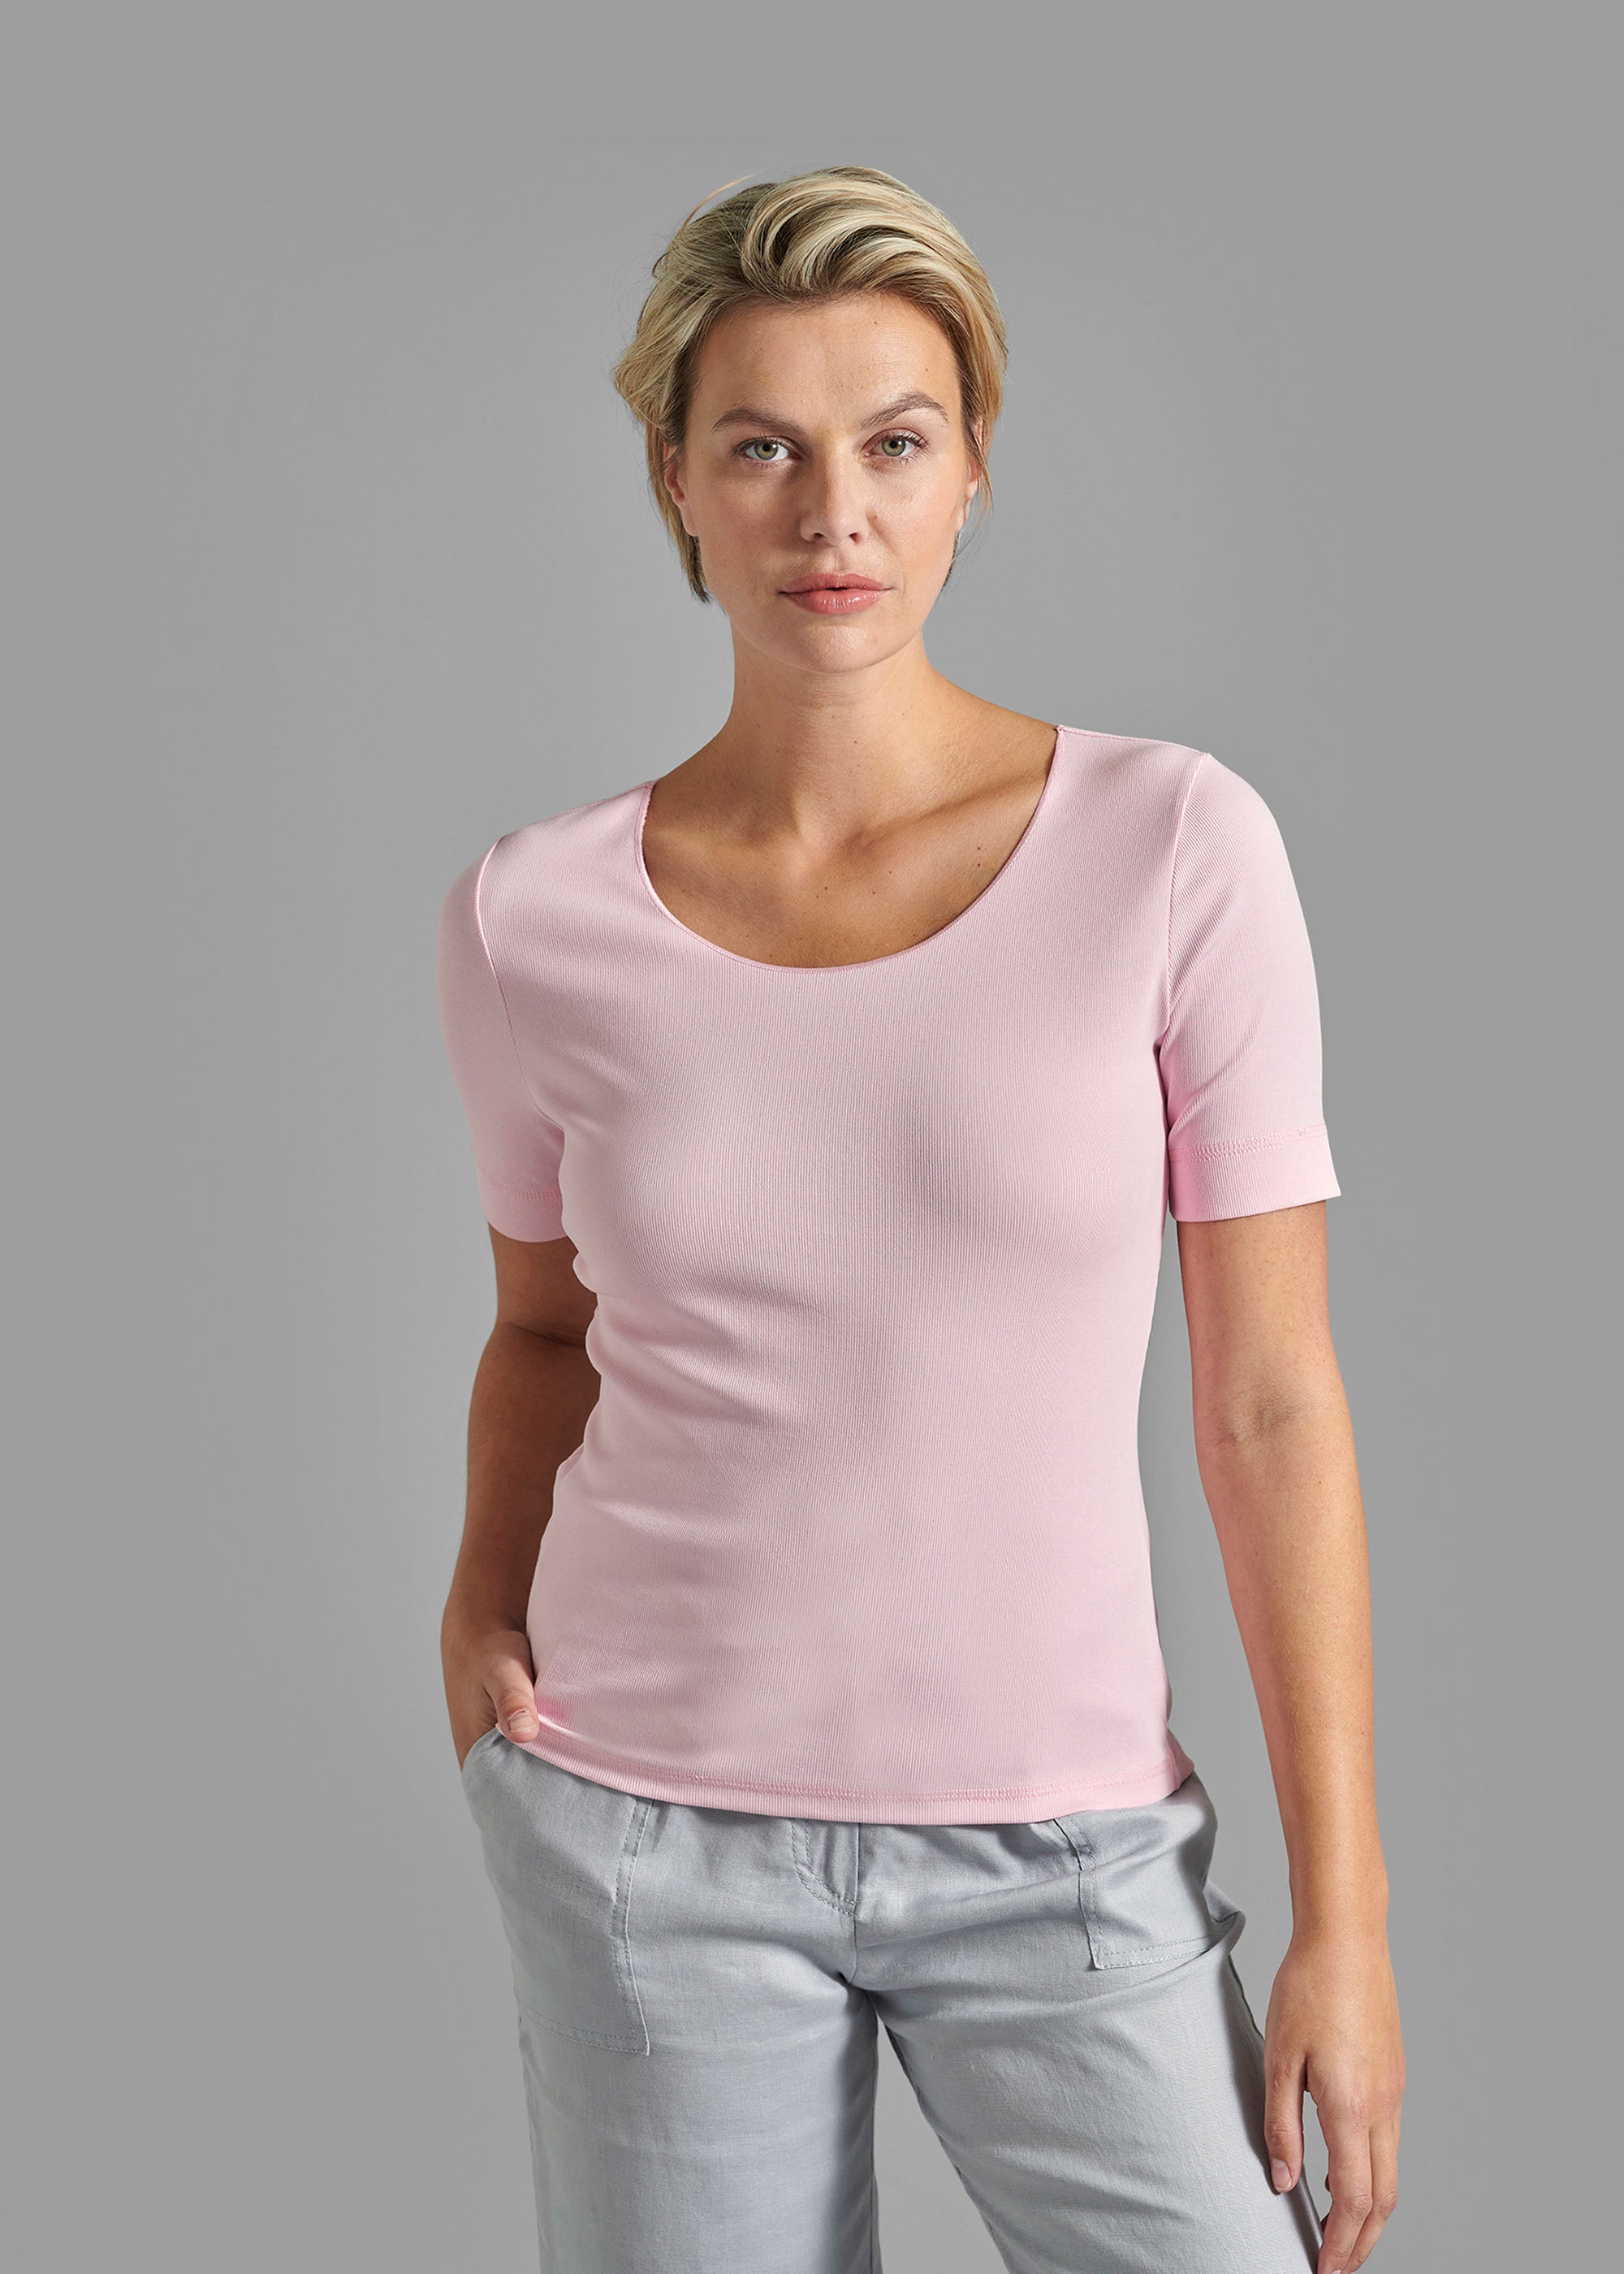 T-Shirt Modell "Eva"